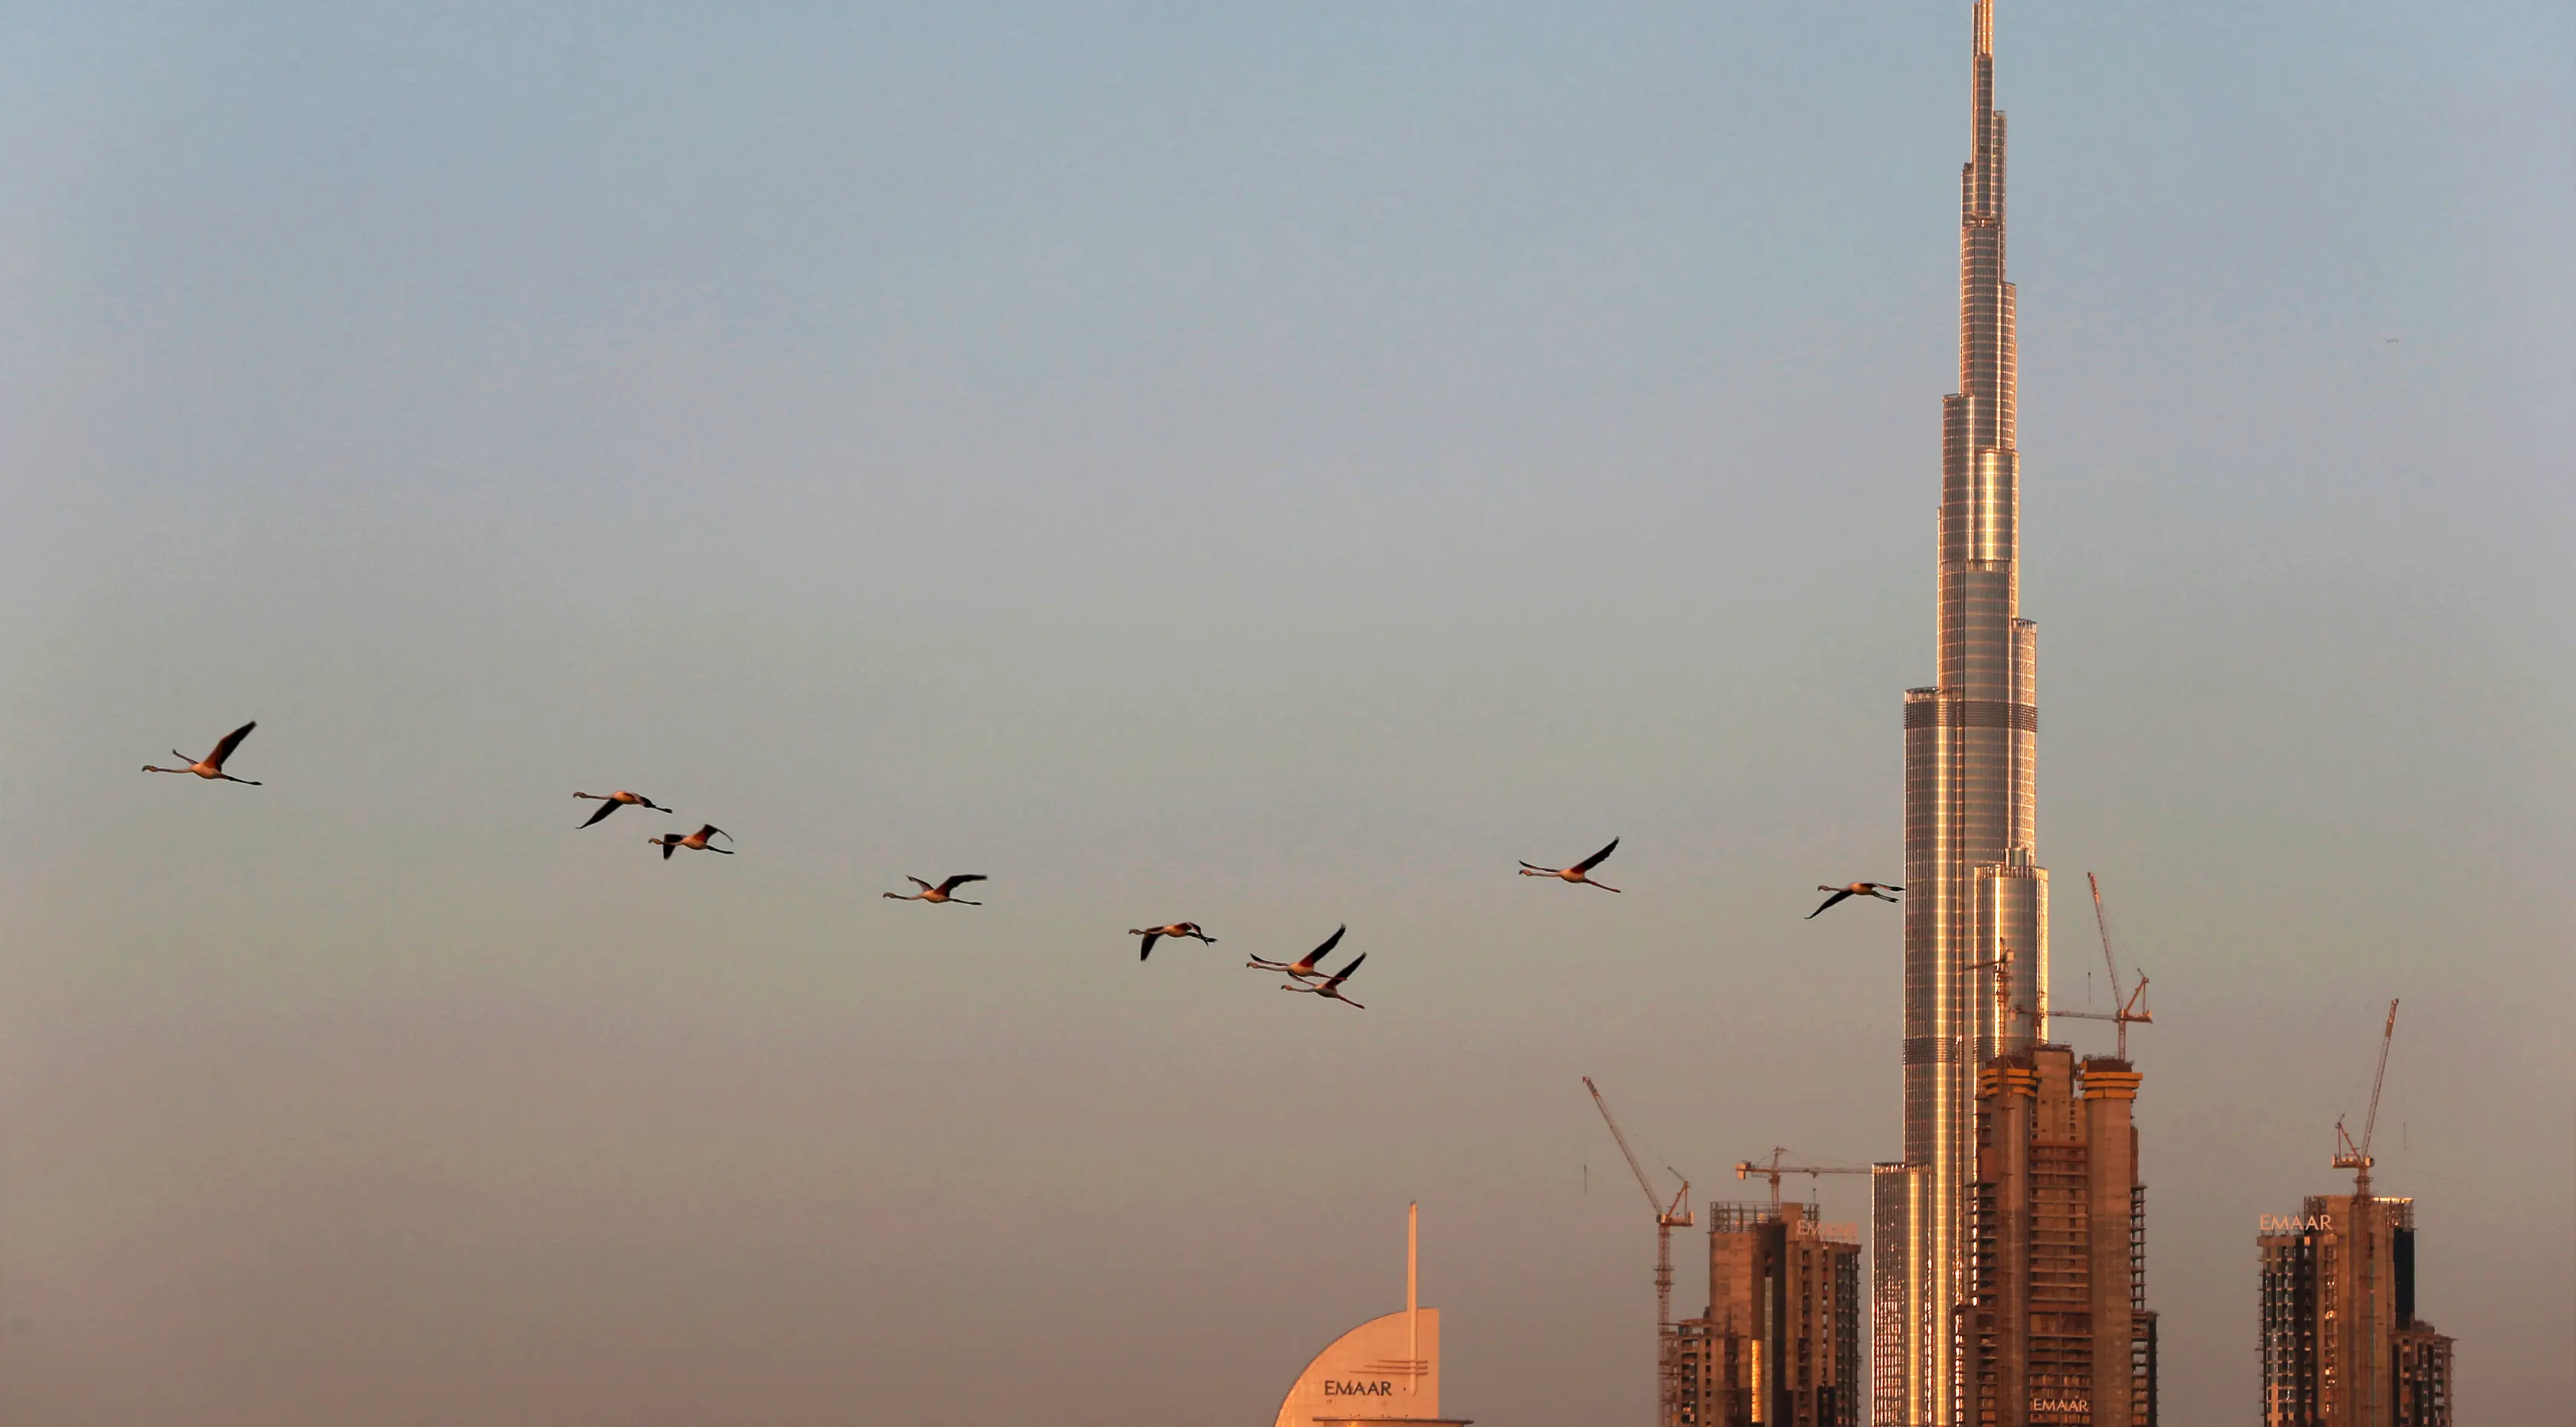 Burung flamingo terbang bermigrasi melewati gedung tertinggi di dunia, Burj Khalifa di Dubai, Uni Emirat Arab (28/1). Meski terdiri dari gedung-gedung mewah, pemerintah Dubai tetap menjaga habitat burung flamingo. (AP Photo / Kamran Jebreili)